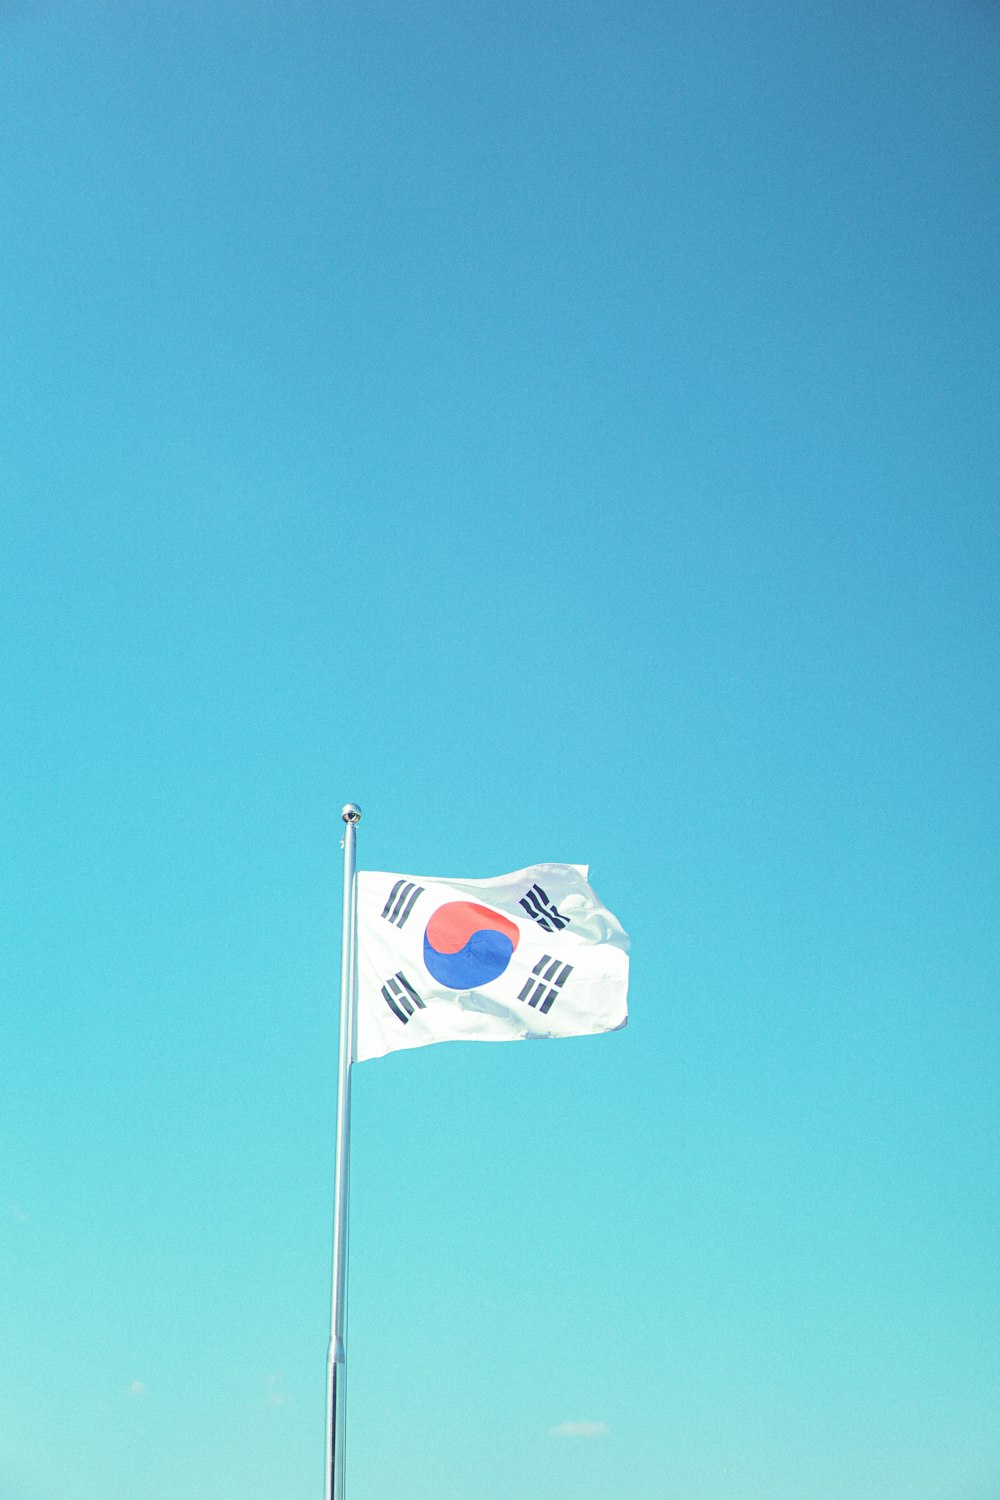 Un drapeau flottant au vent par temps clair